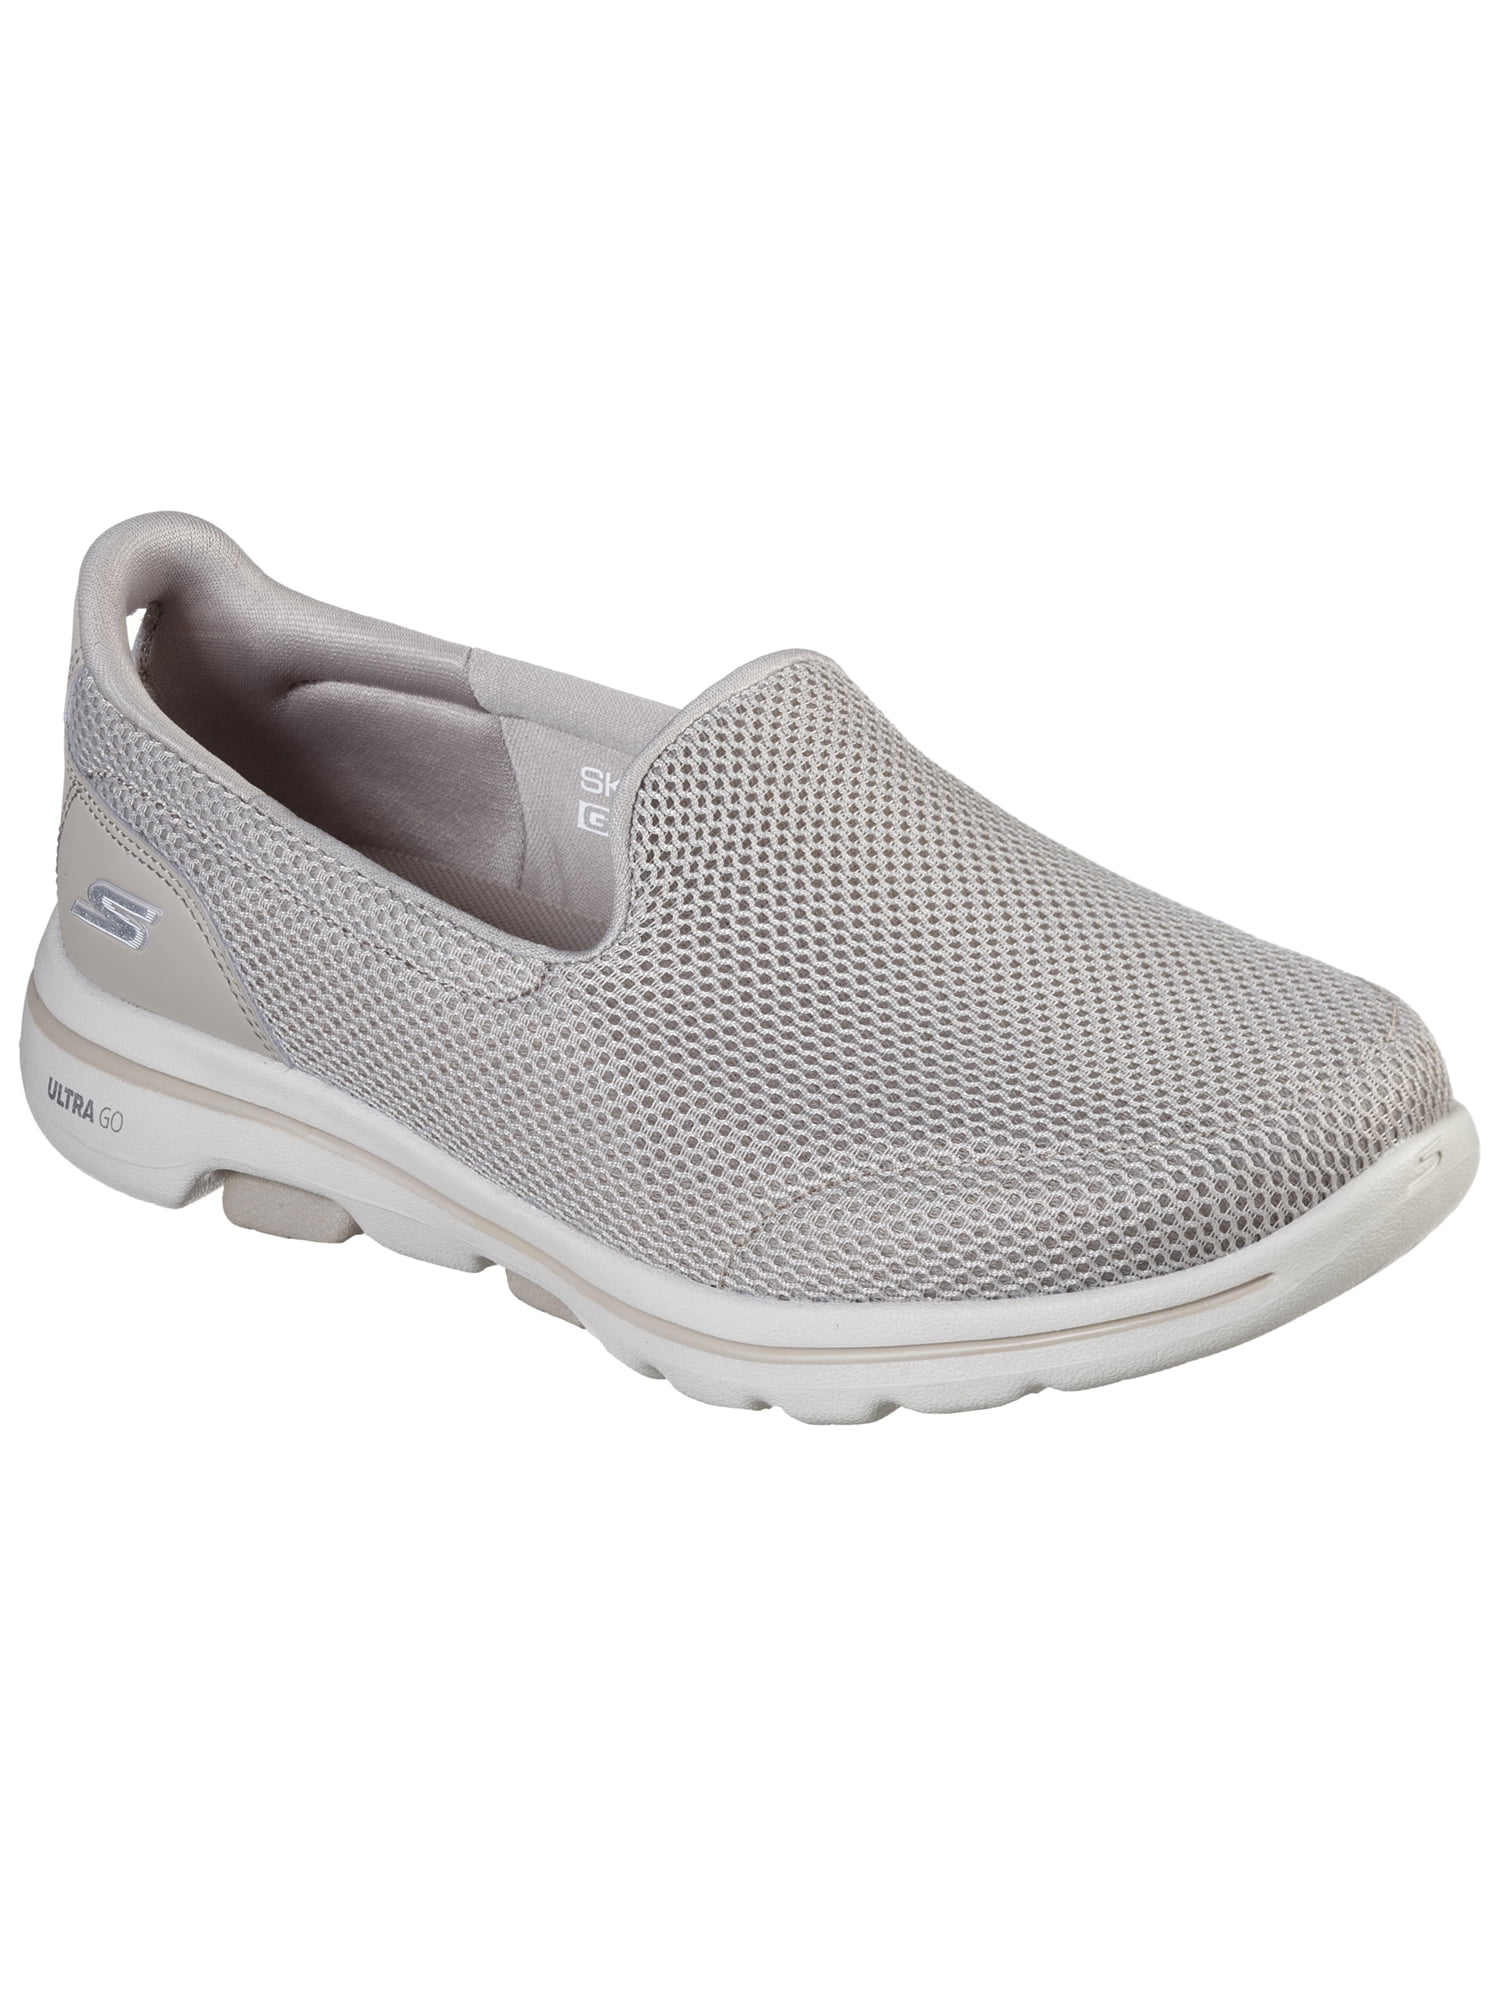 aanklager Fauteuil betekenis Skechers Women's GOwalk 5 Slip-on Comfort Shoe (Wide Width Available) -  Walmart.com